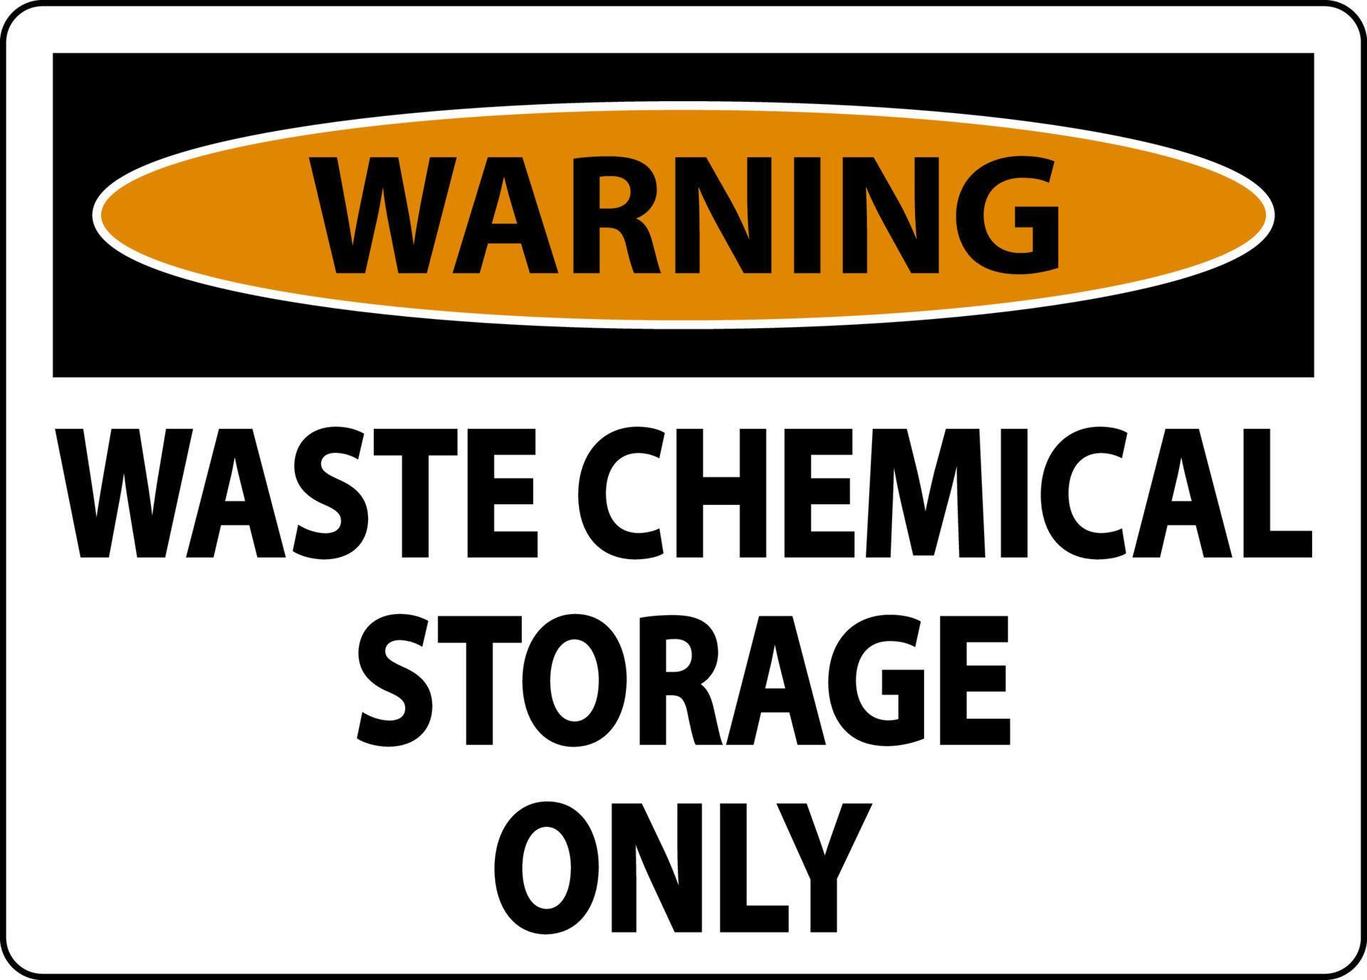 etiqueta de advertencia de almacenamiento de productos químicos de desecho solamente vector